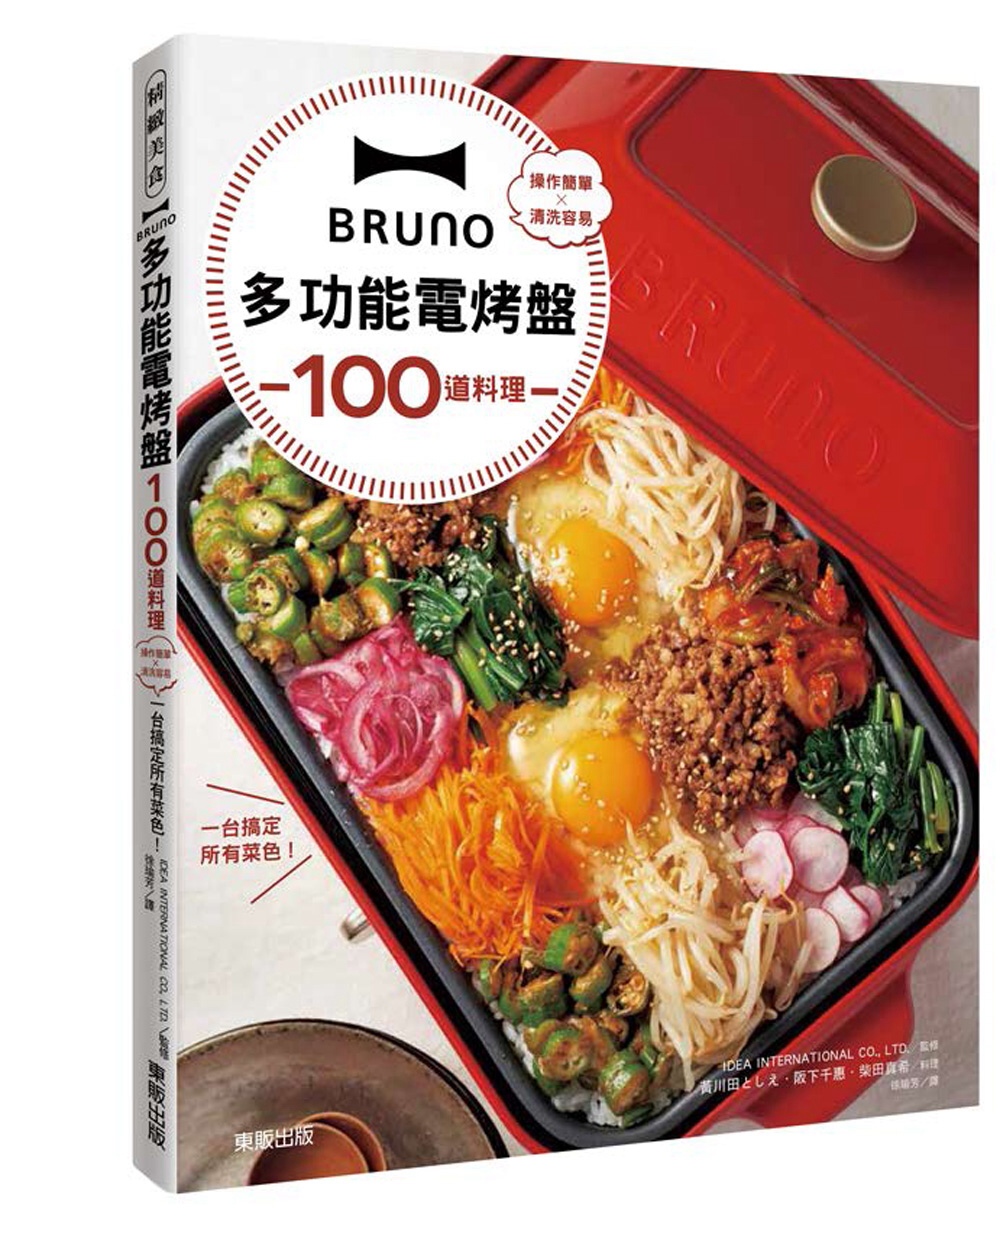 BRUNO多功能電烤盤100道料理：操作簡單×清洗容易，一台...